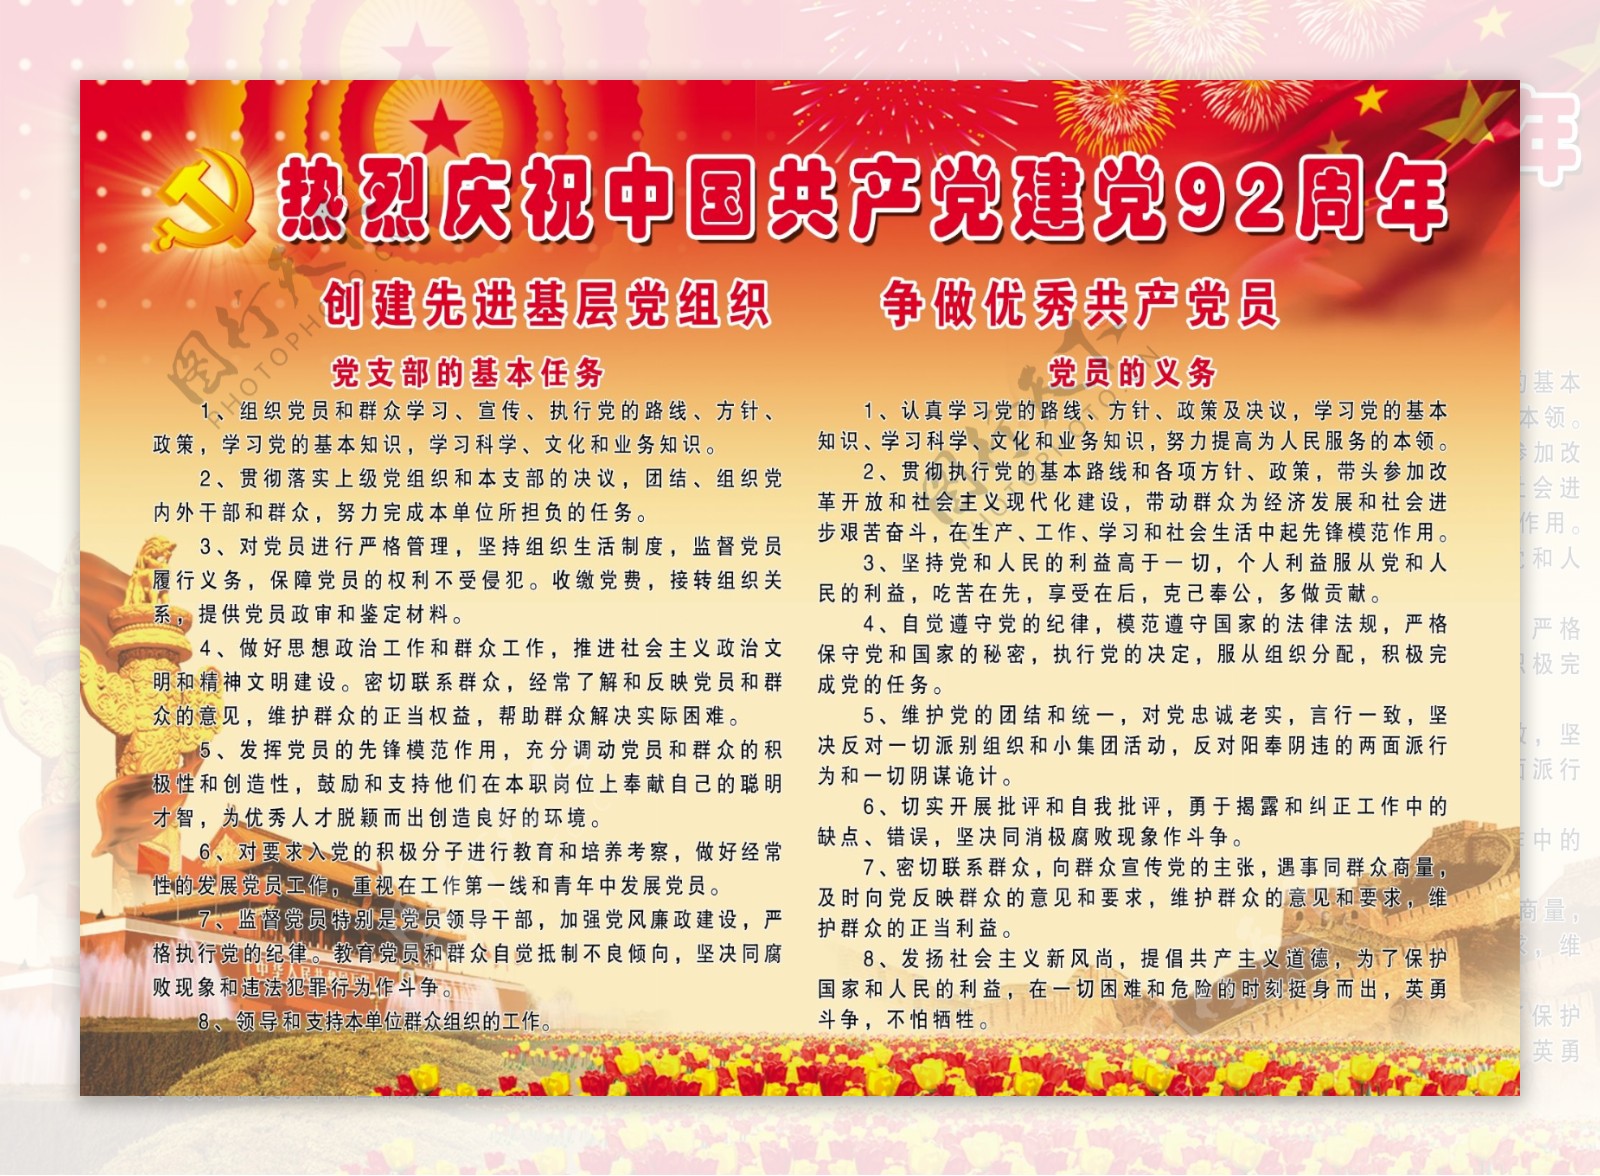 热烈庆祝中国建党周年版面